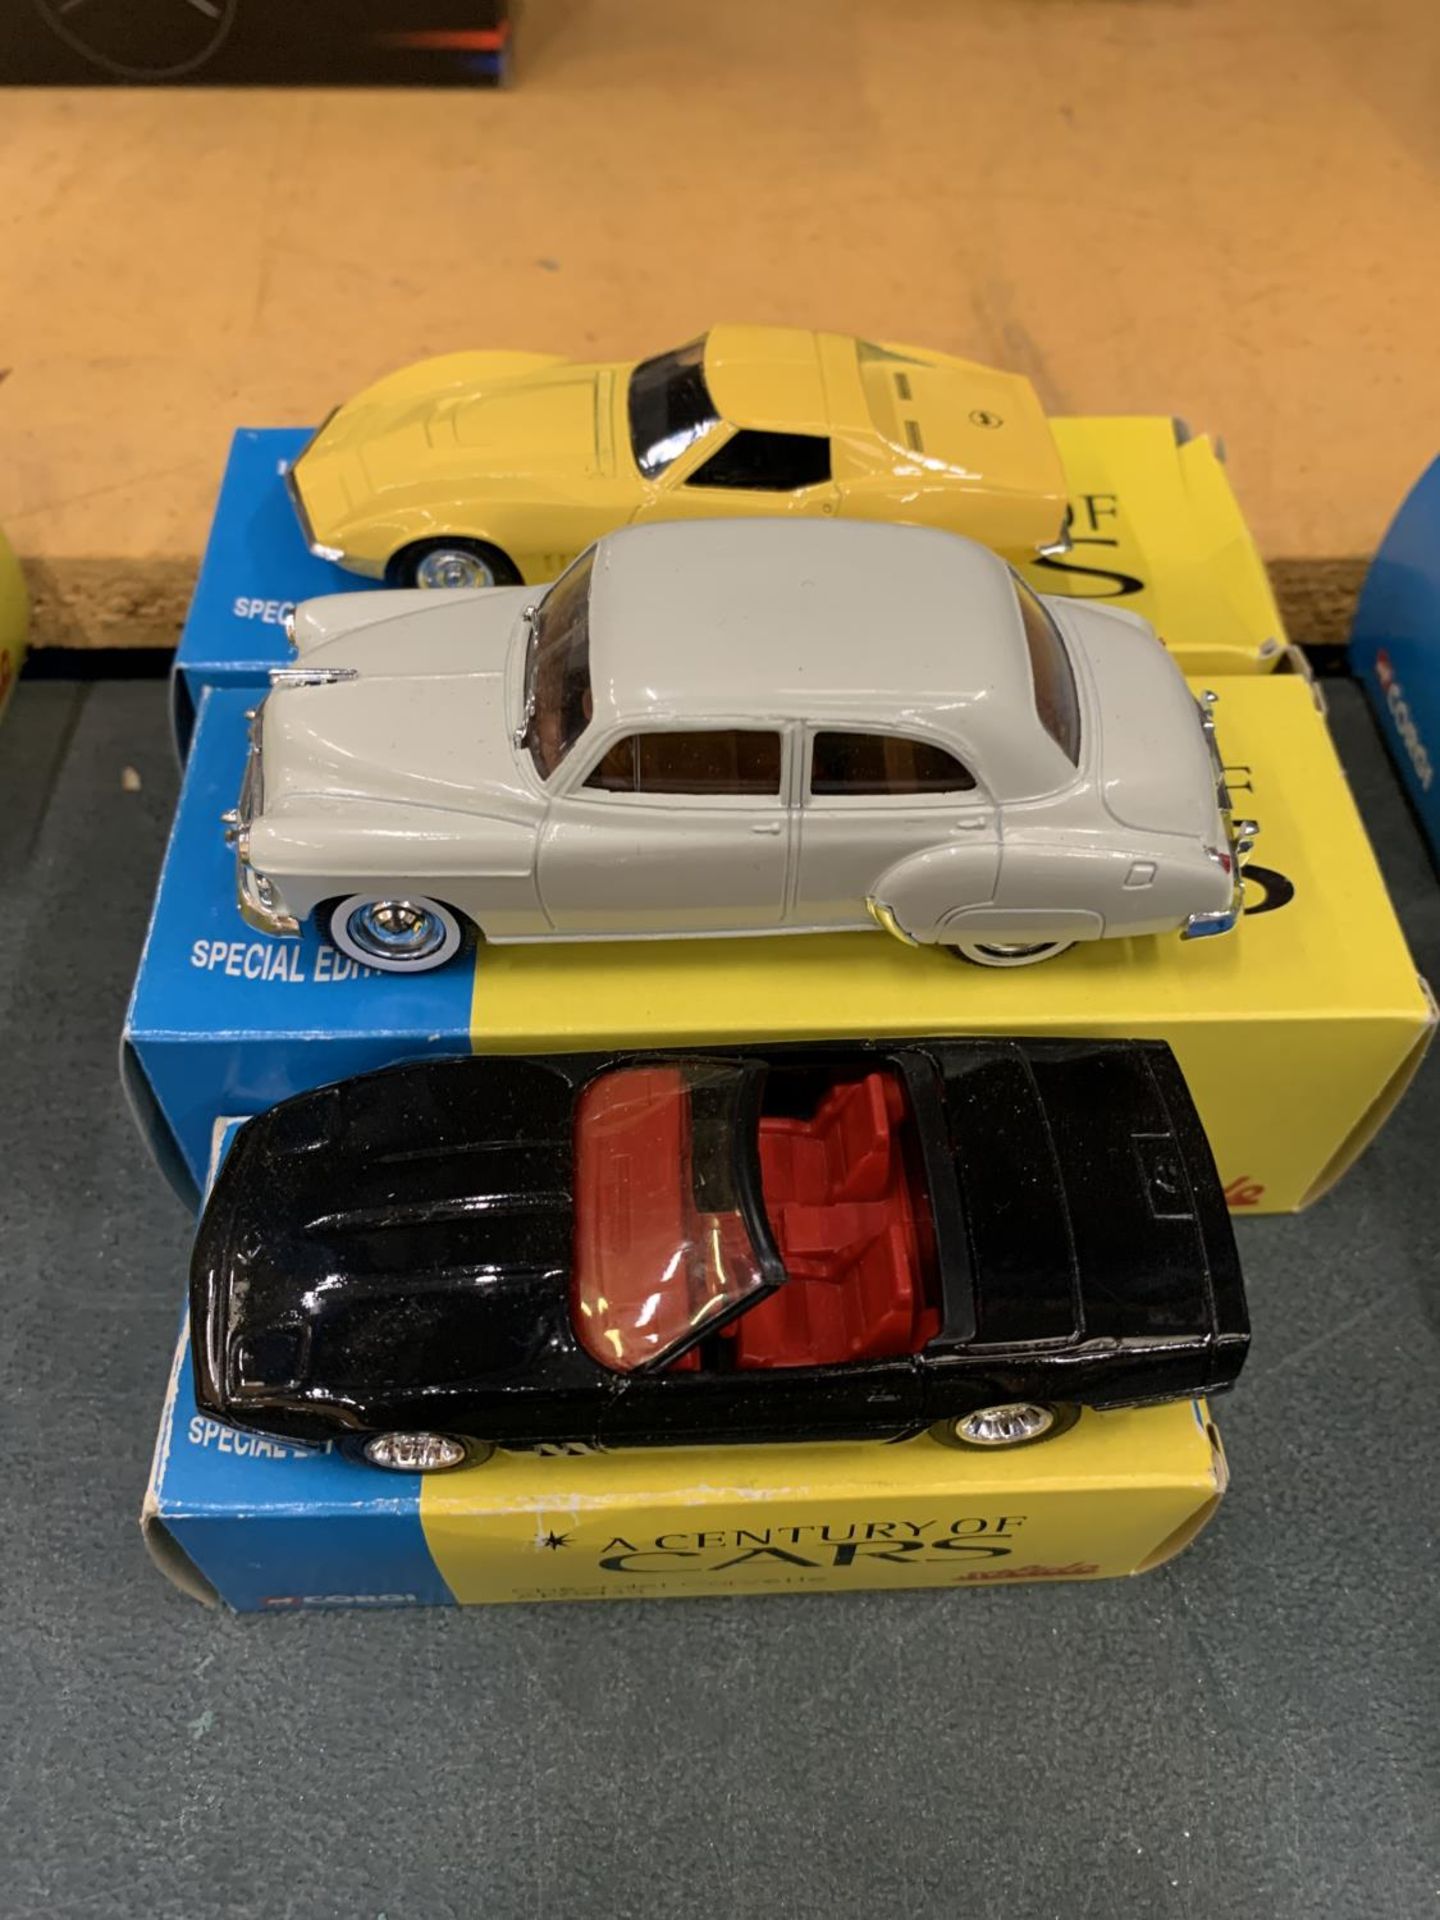 THREE BOXED CORGI 'A CENTURY OF CARS' TO INCLUDE A CHEVROLET CORVETTE, 1950, AND A CORVETTE JNI